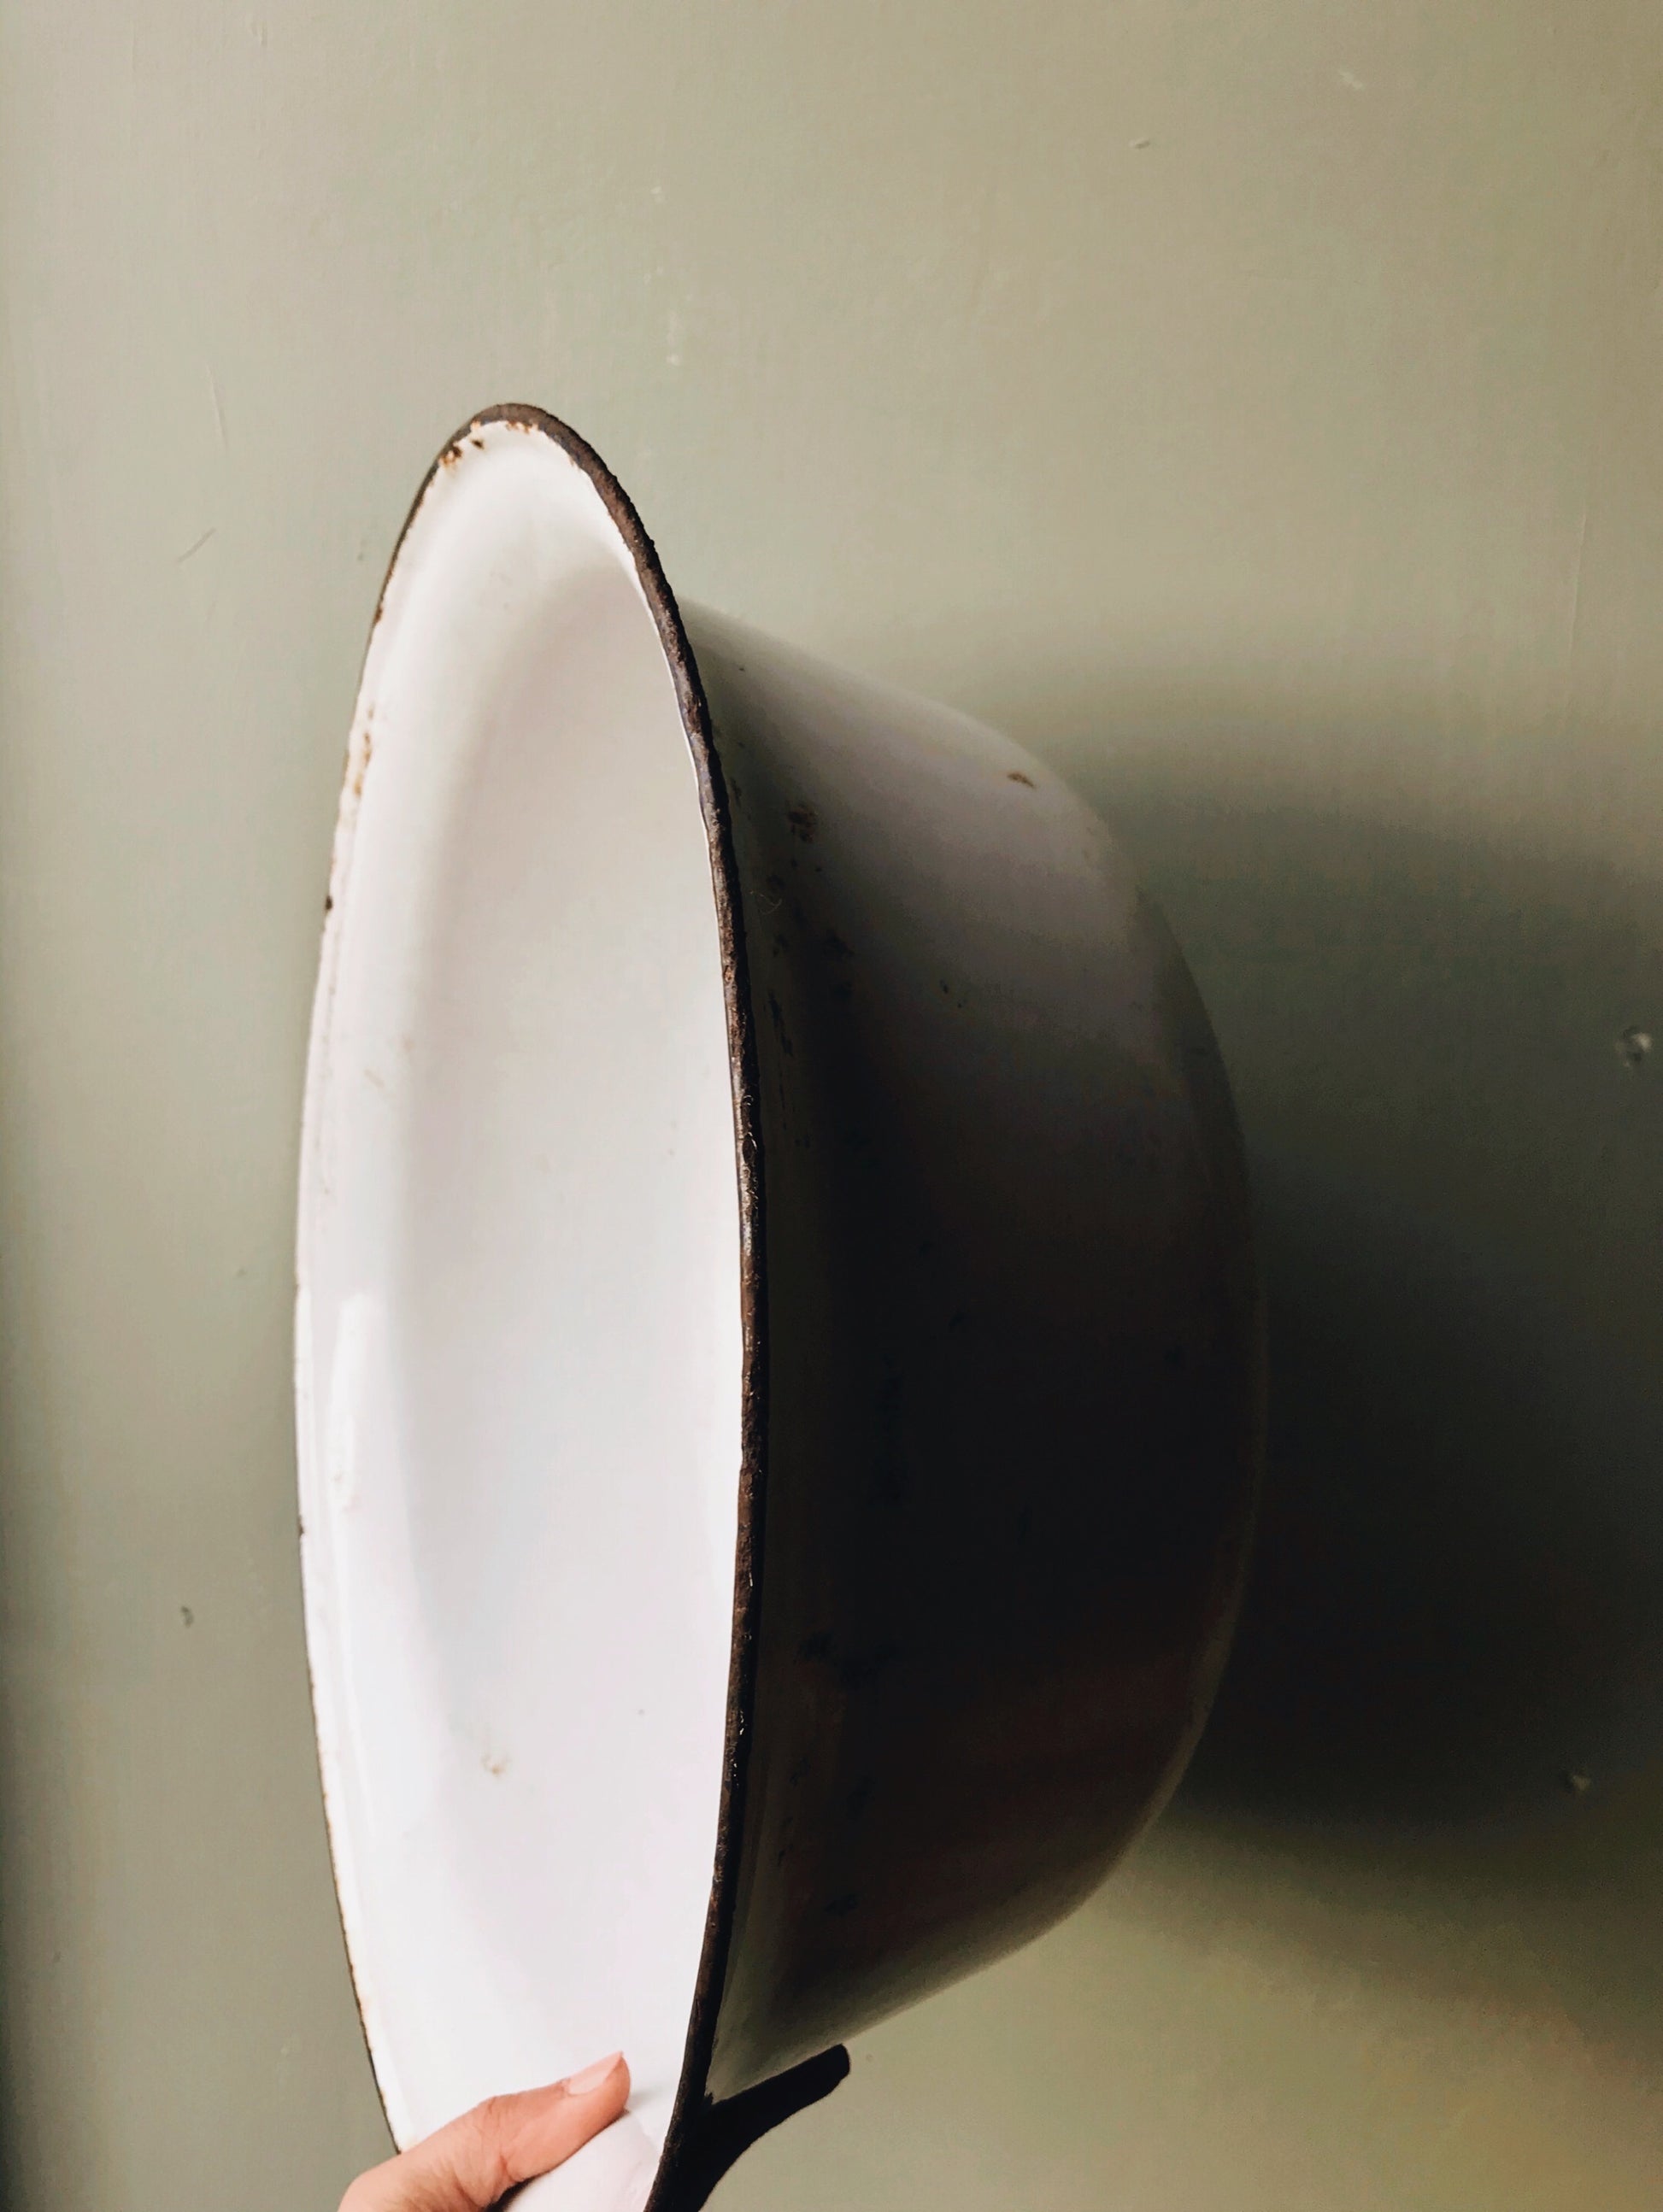 Extra Large Vintage Enamel Bowl - Stone & Sage 